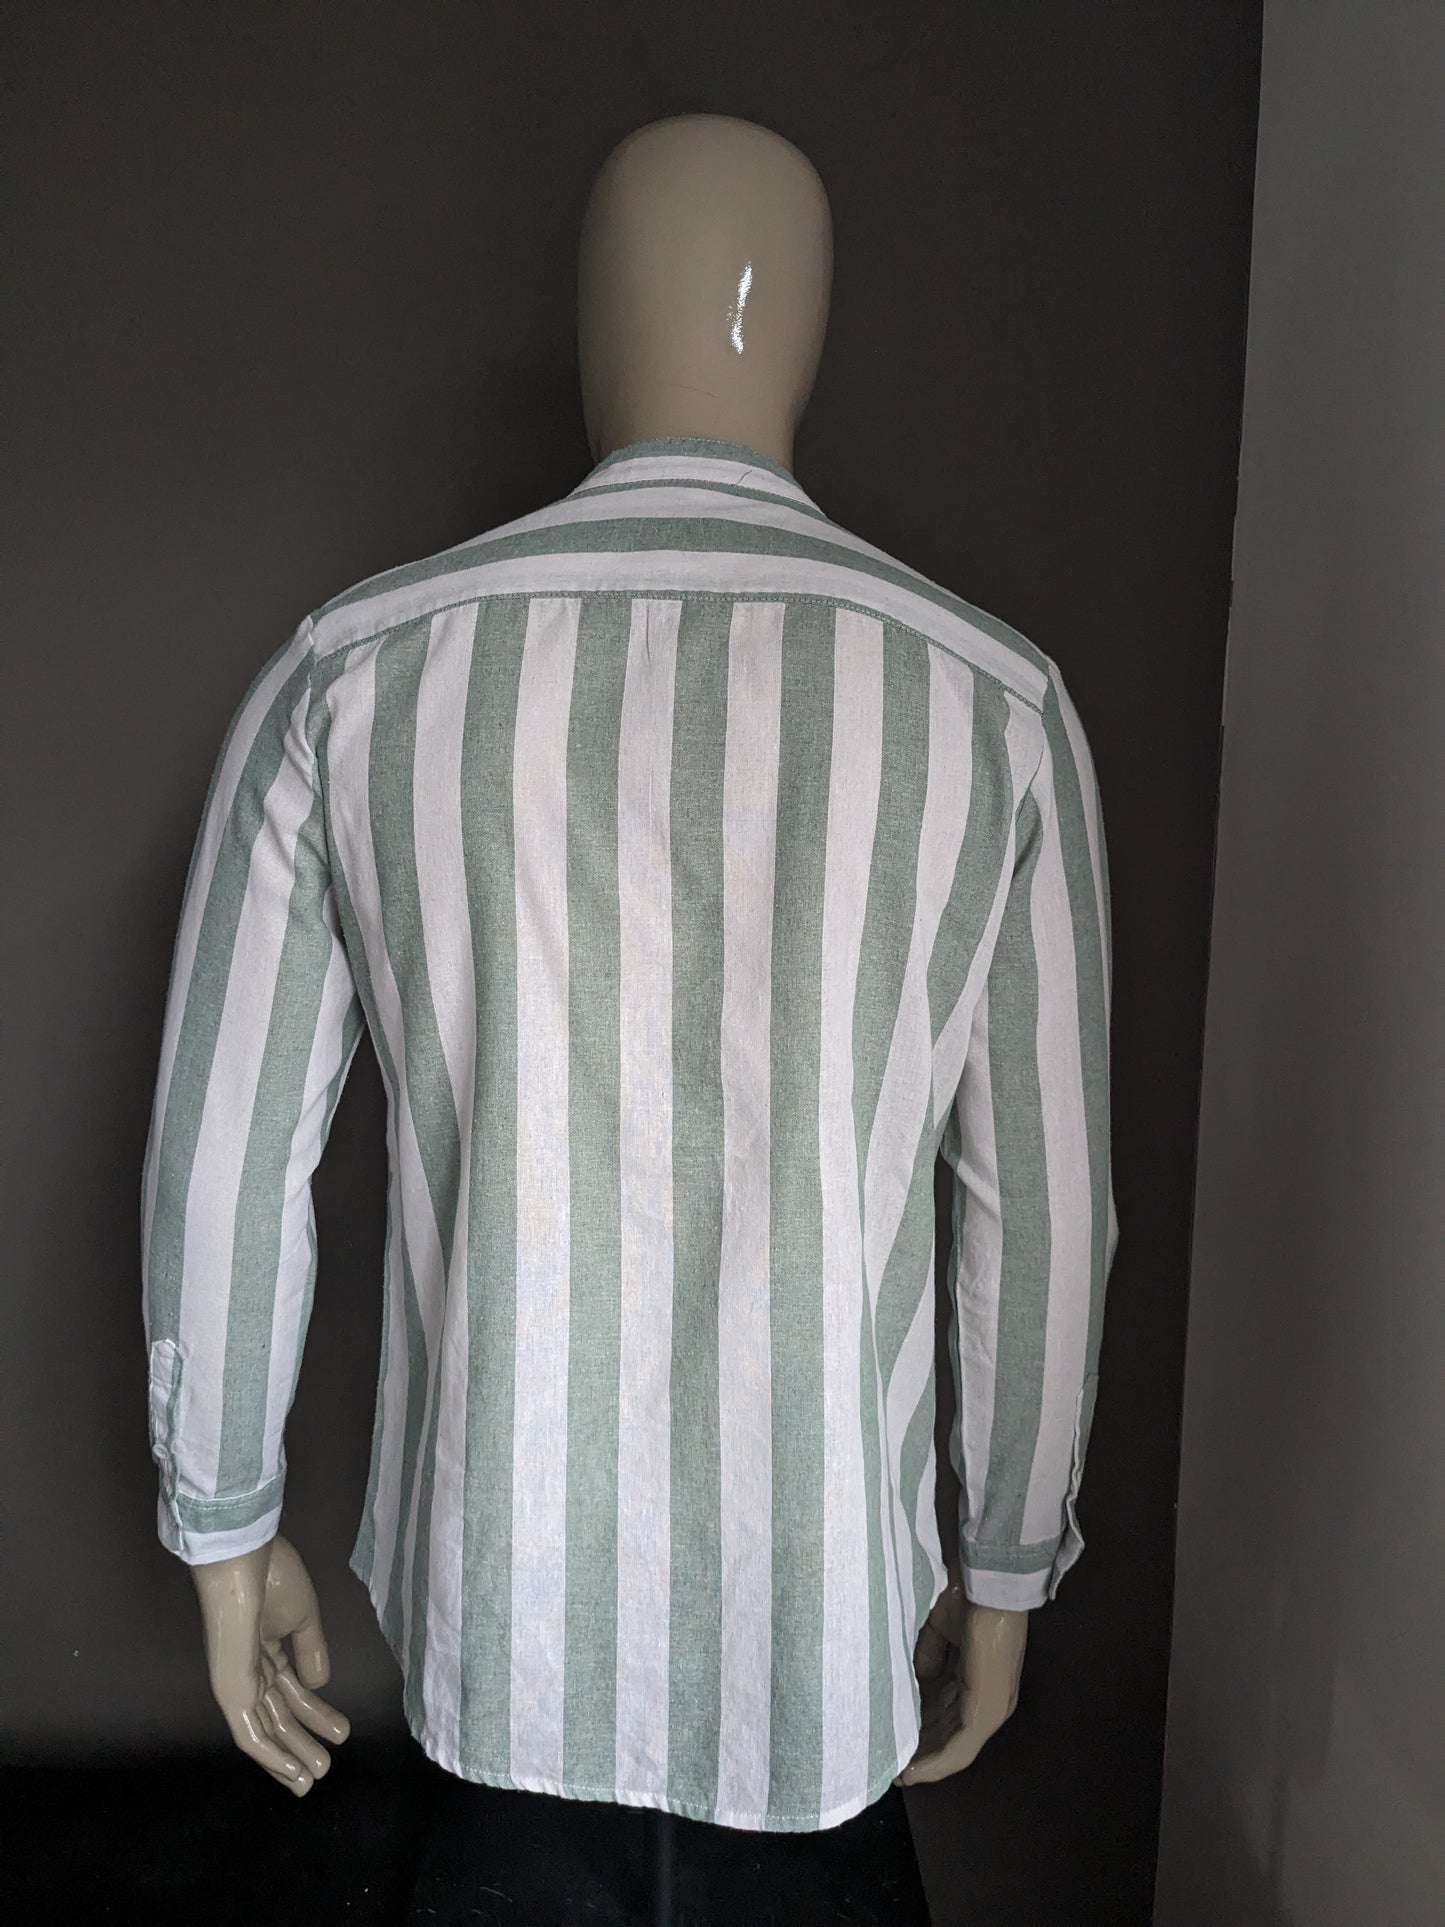 Merkloos overhemd-shirt met boeren / opstaande / mao kraag. Groen Wit gestreept. Maat M / L.